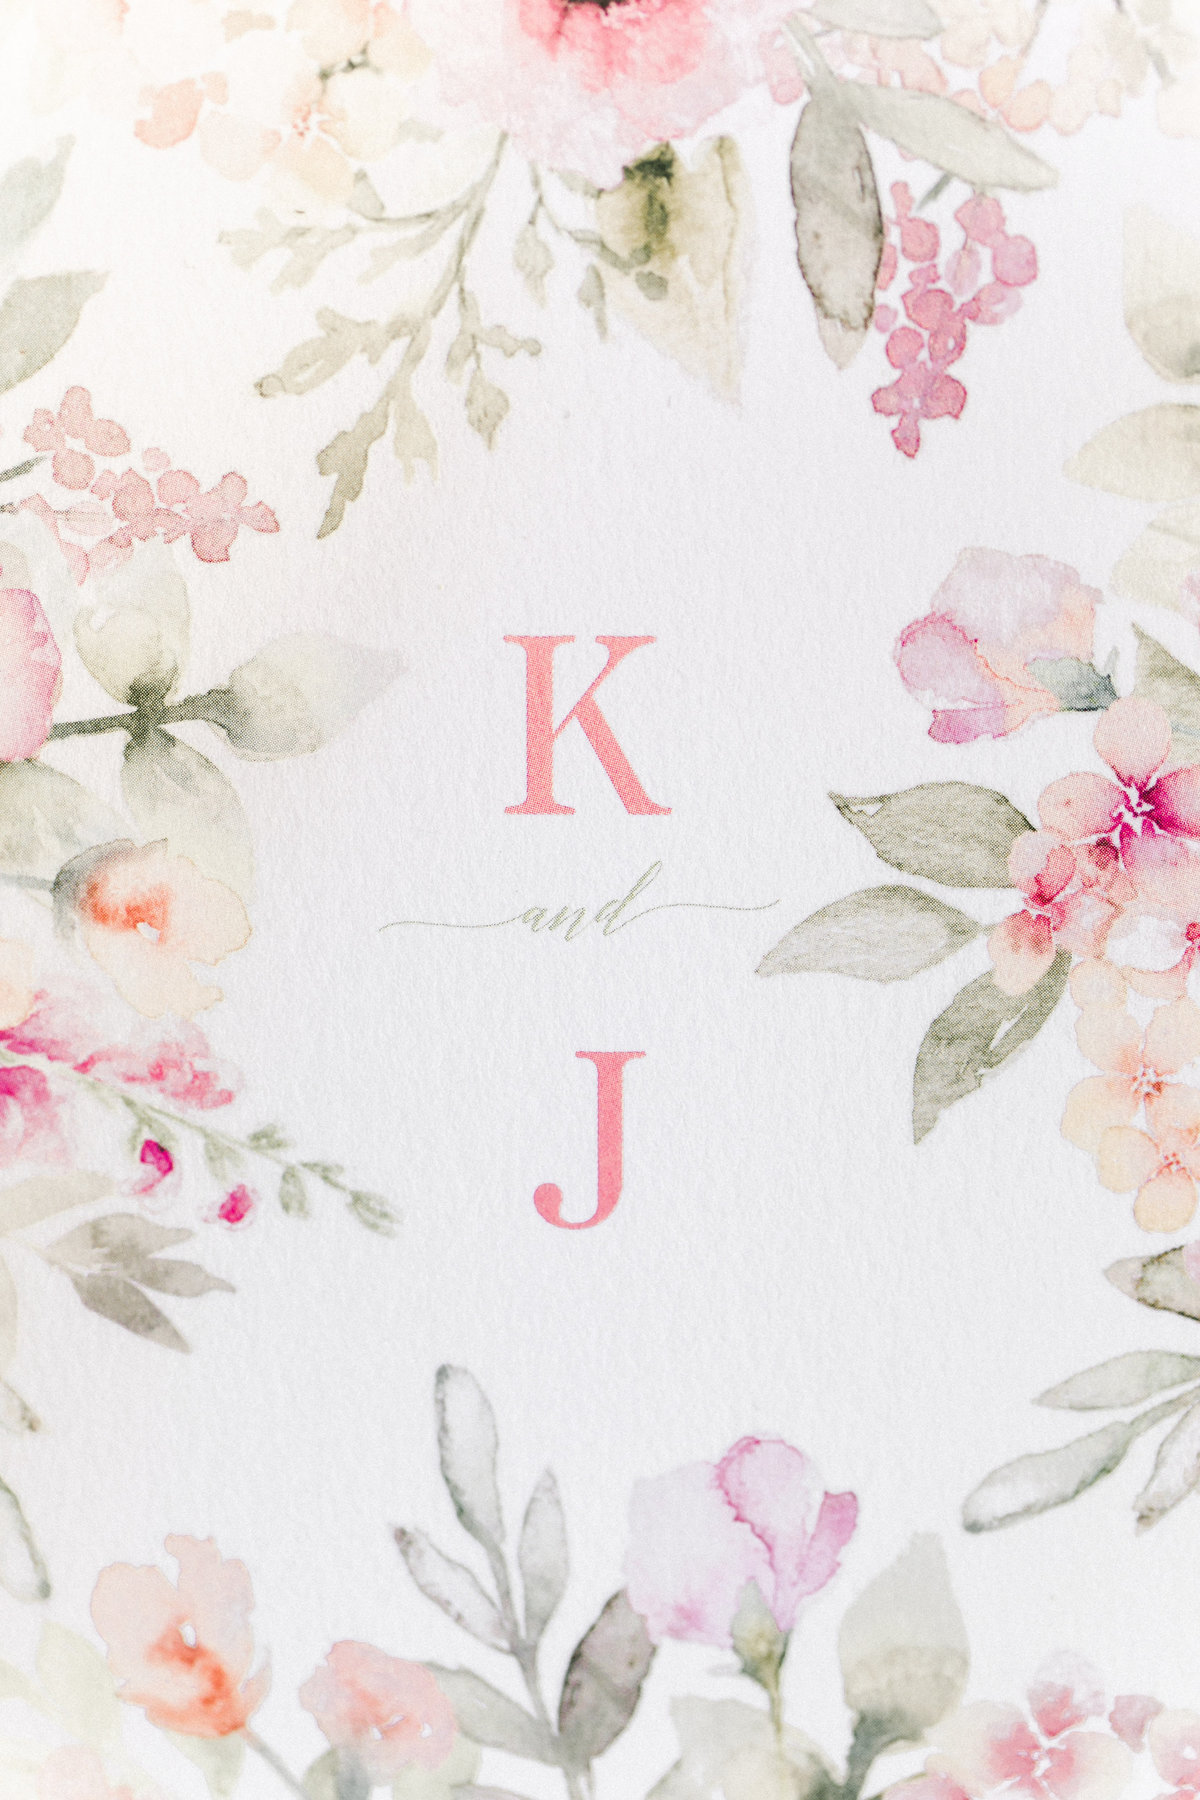 Kate & Jack_Wedding_Bridal Details_1145